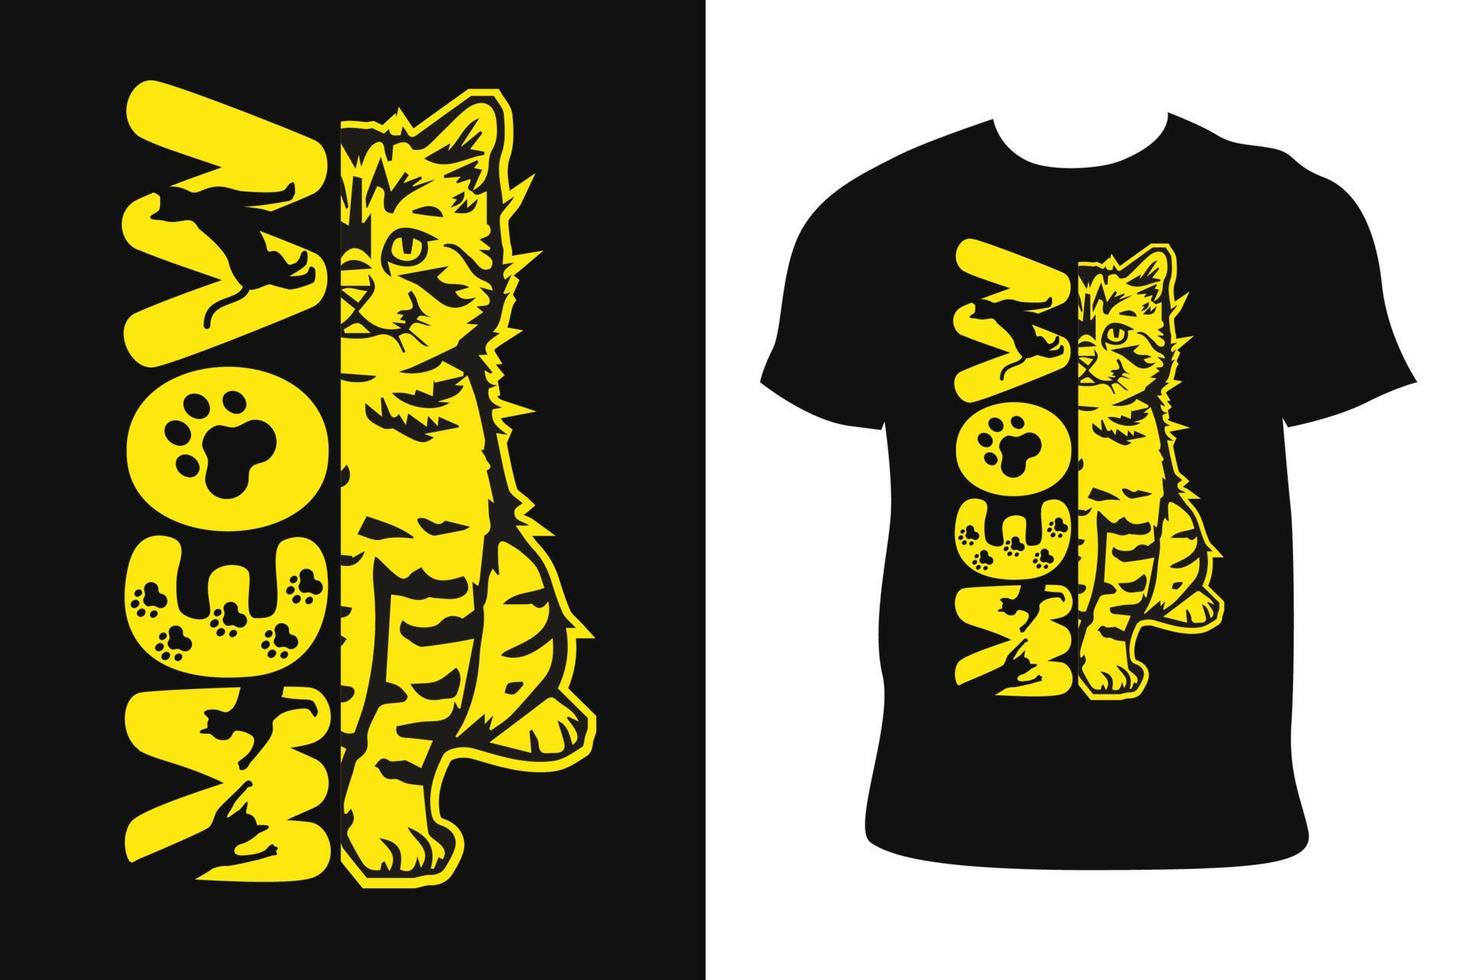 design de camiseta de gato. camiseta de gato. vetor livre de camiseta de gato.